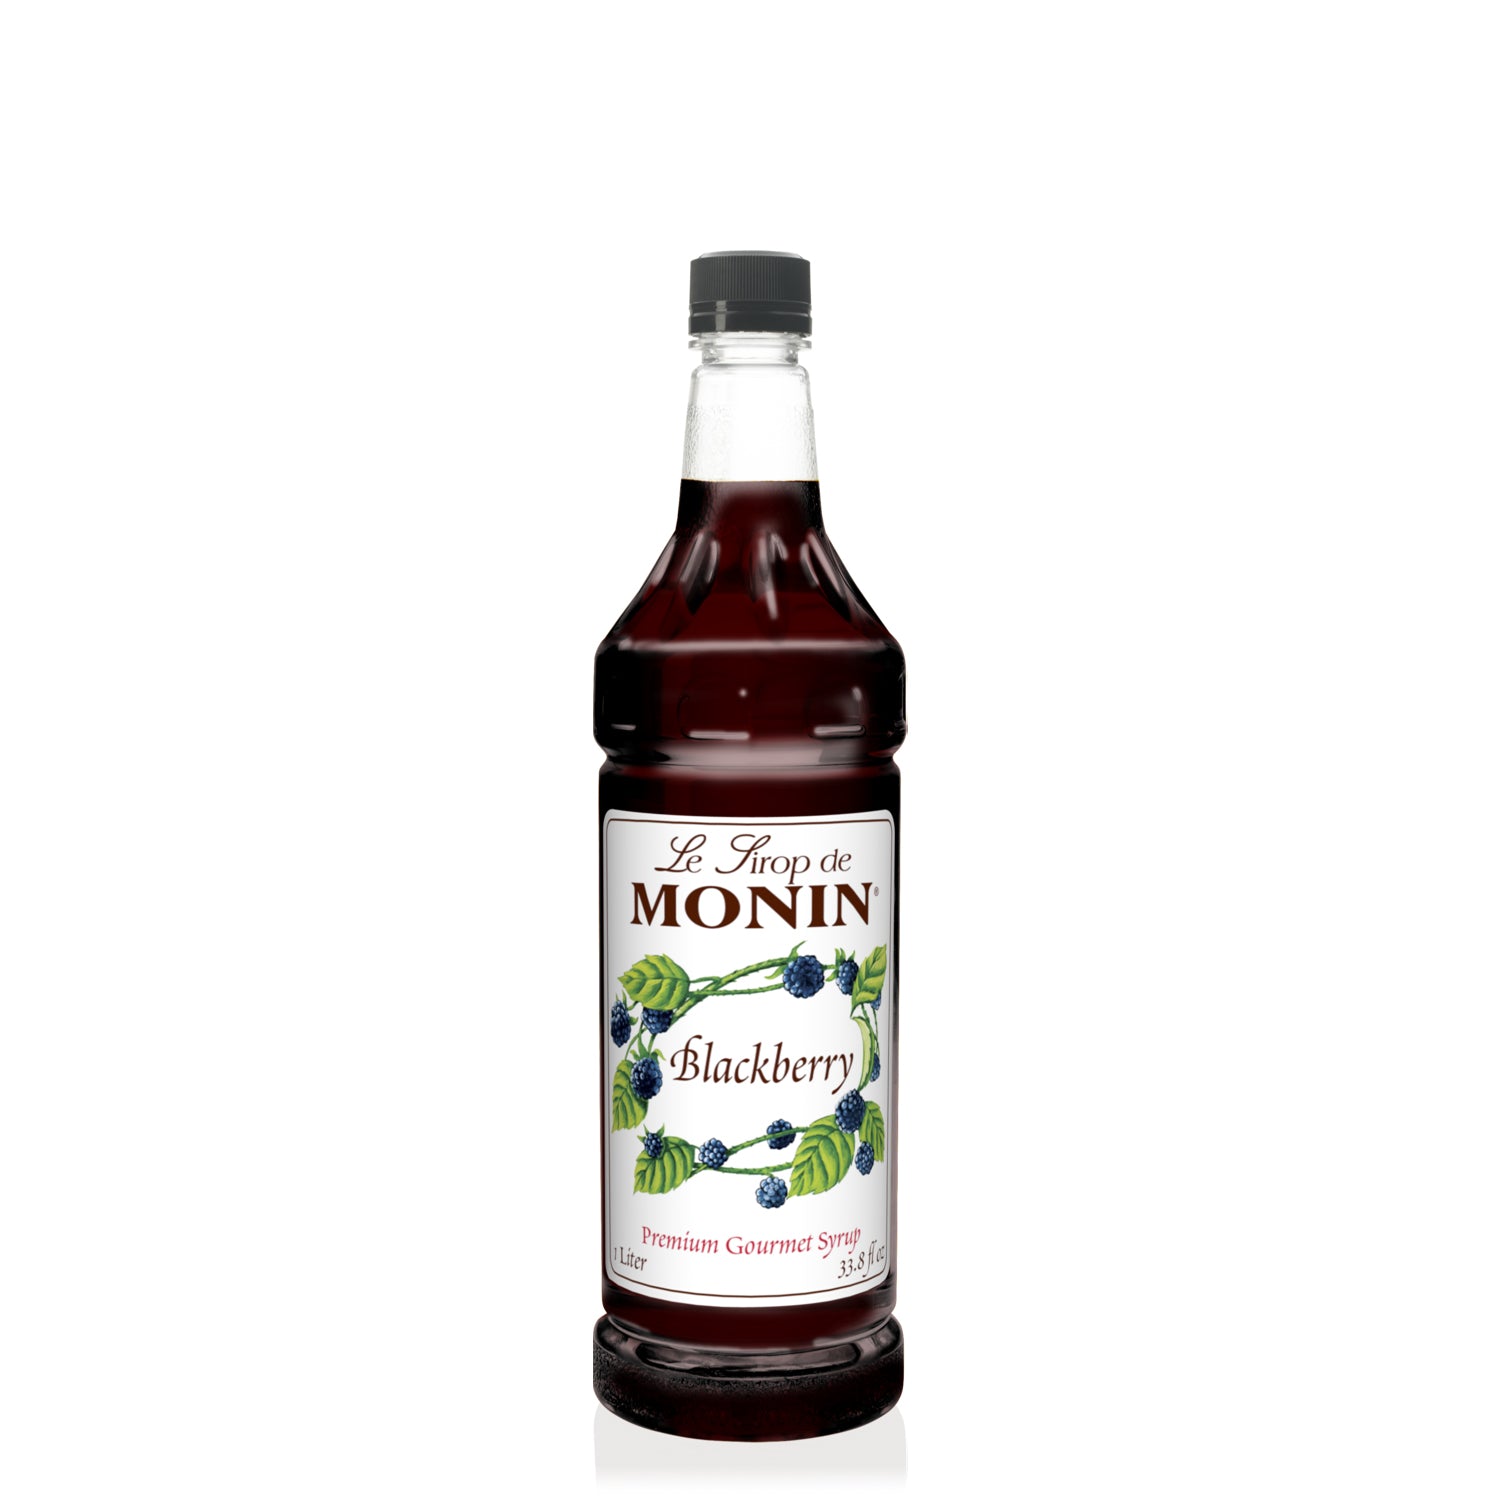 Monin Blackberry Syrup in clear 1 L bottle